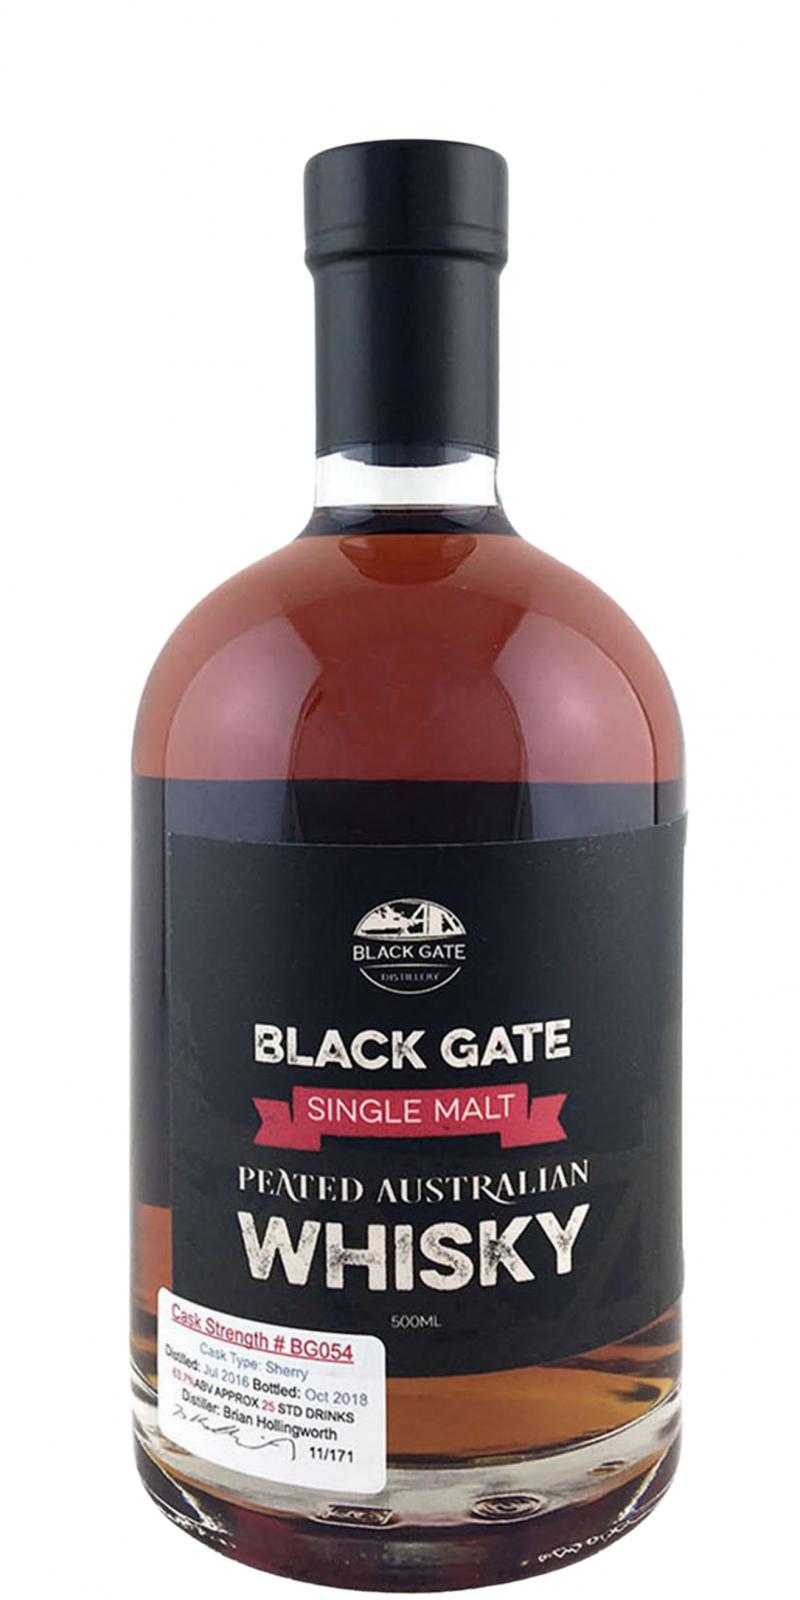 Black Gate 2016 Peated Australian Whisky Sherry Cask BG054 63.7% 500ml